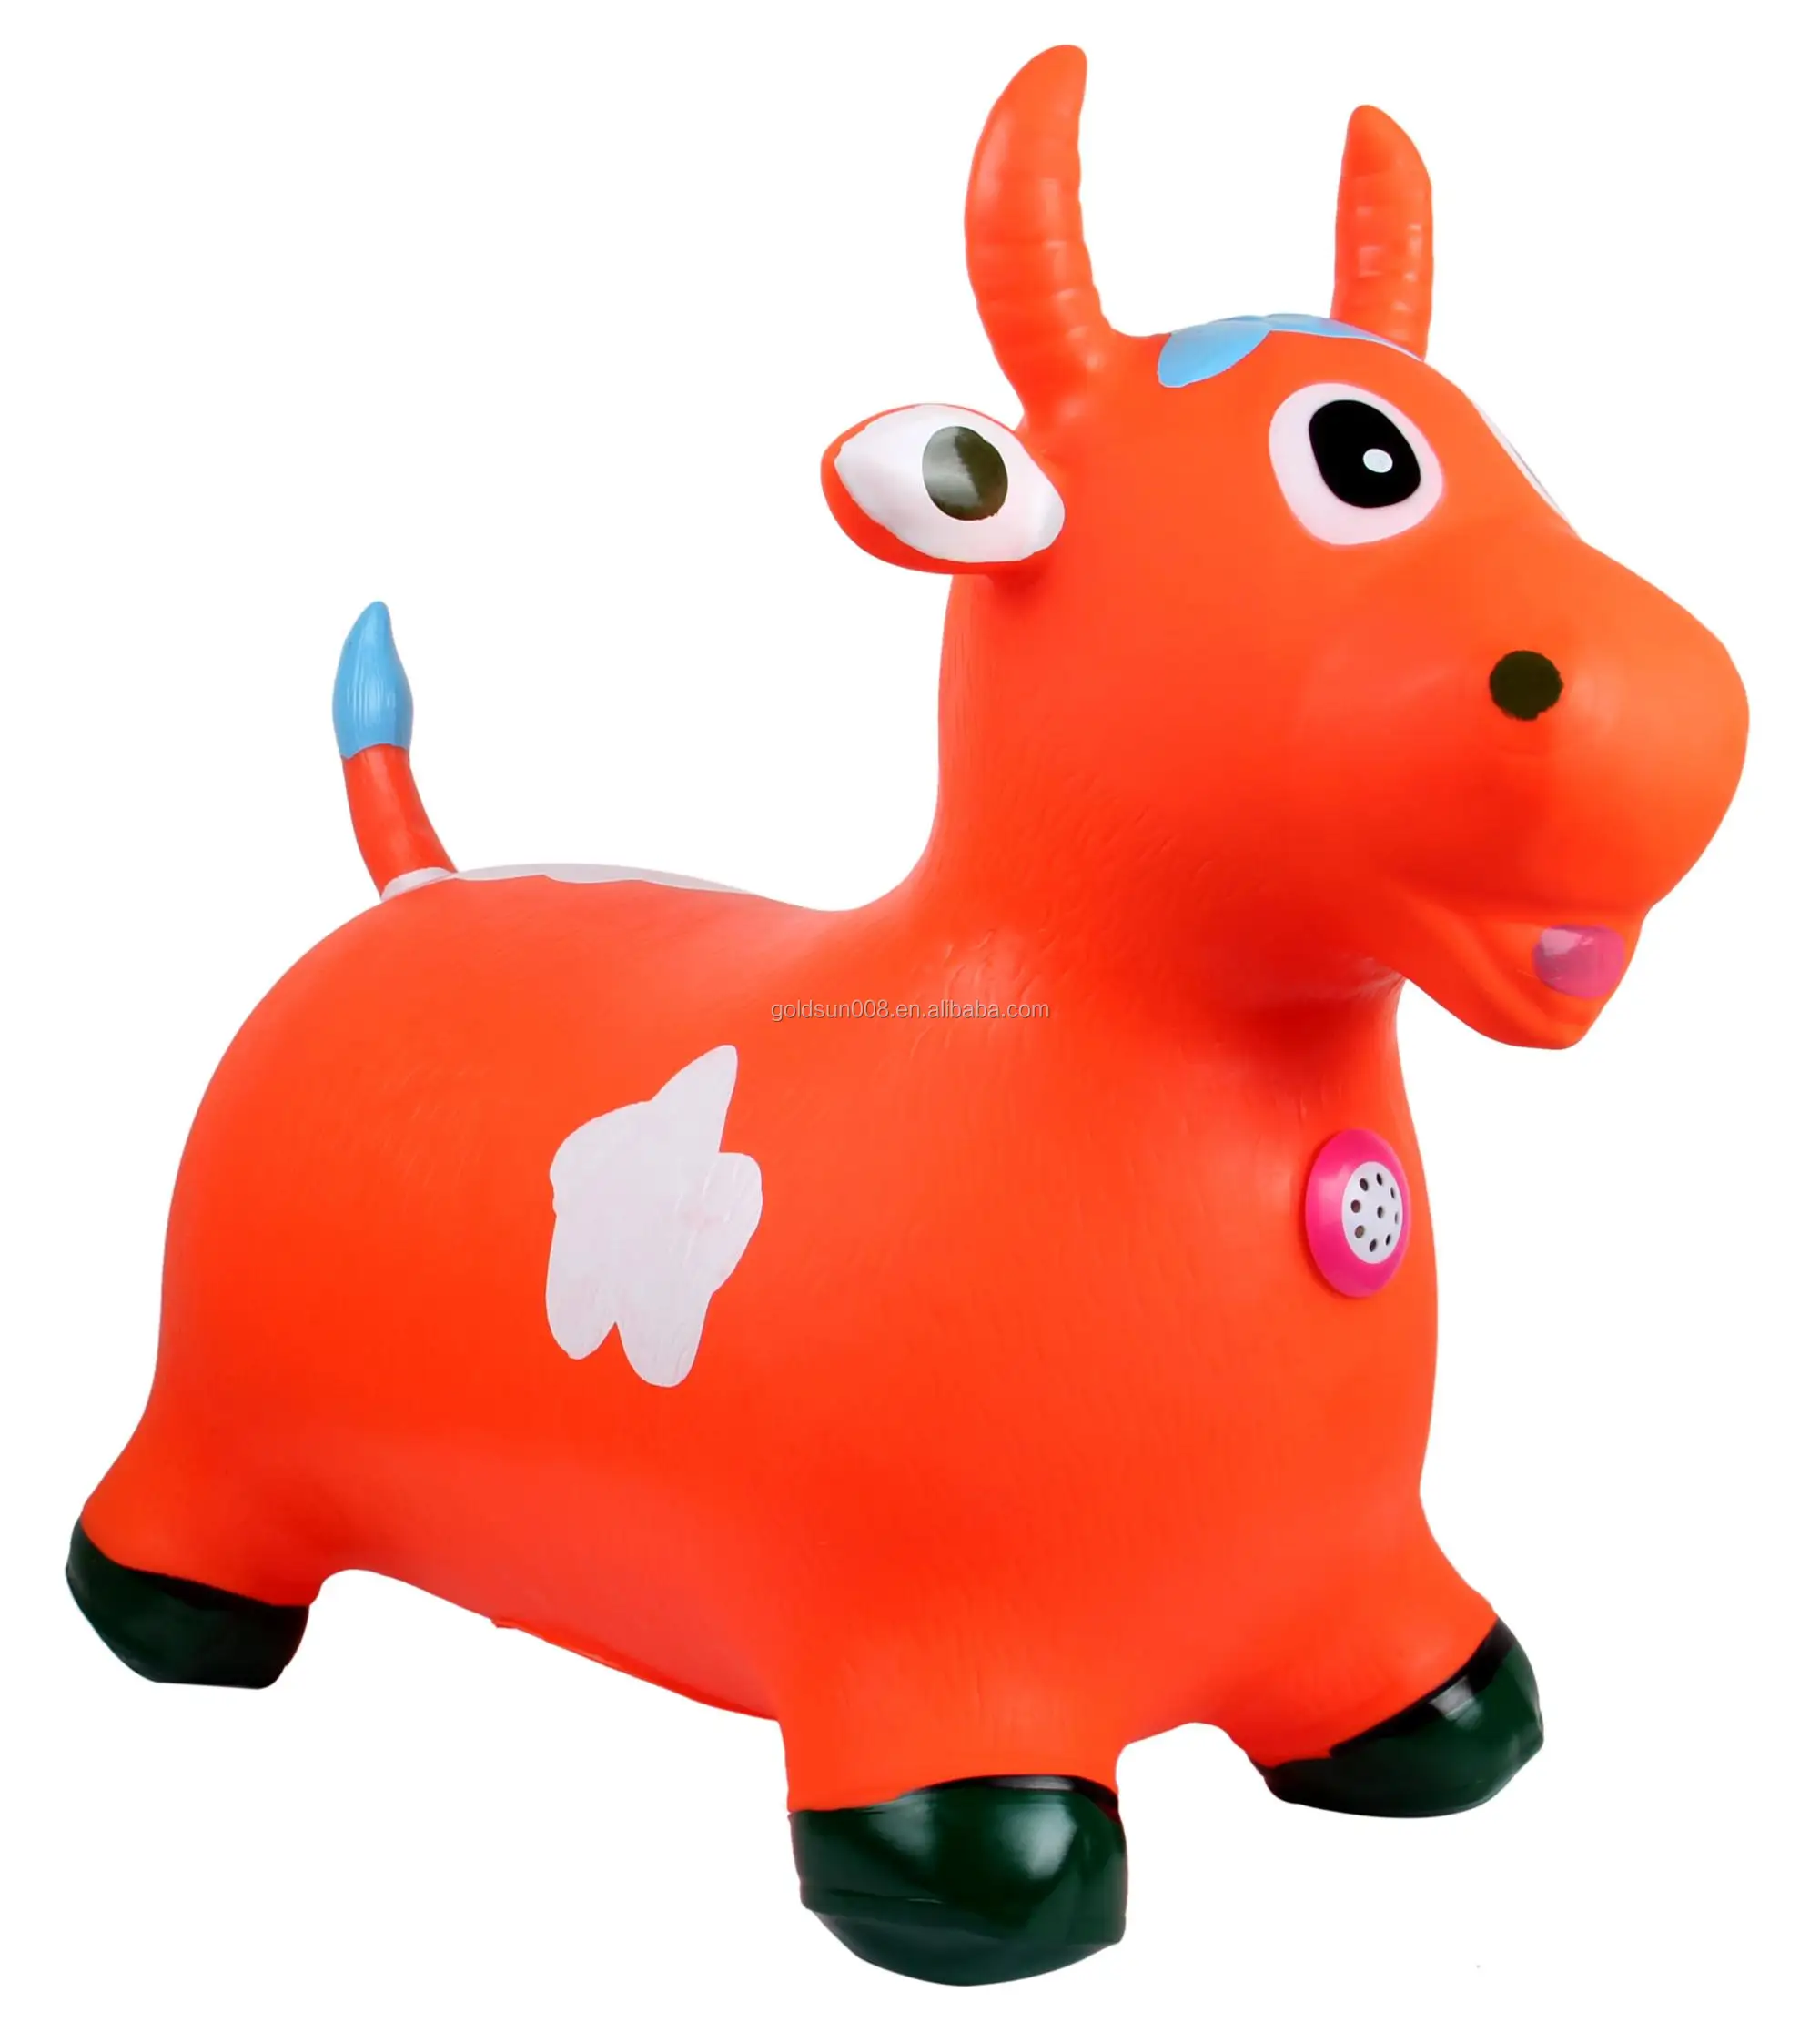 Animal vento-up brinquedo seguro de plástico andando pulando cavalo vento  até brinquedo presente de natal brinquedo de corda cavalo relógio brinquedo  - AliExpress